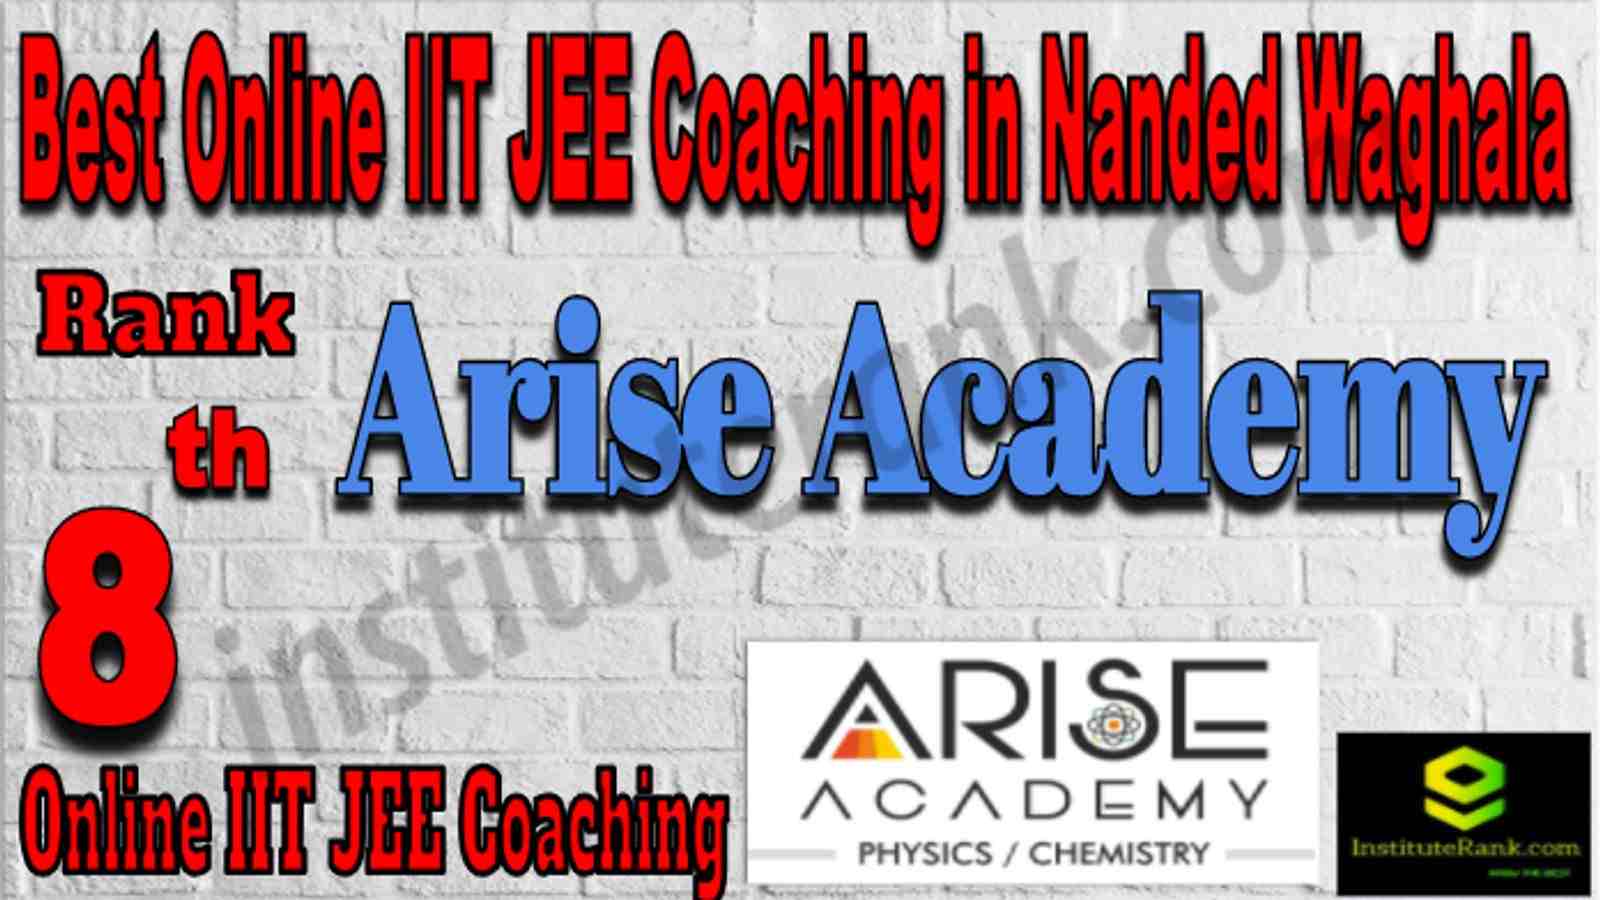 Rank 8 Best Online IIT JEE Coaching in Nanded Waghala